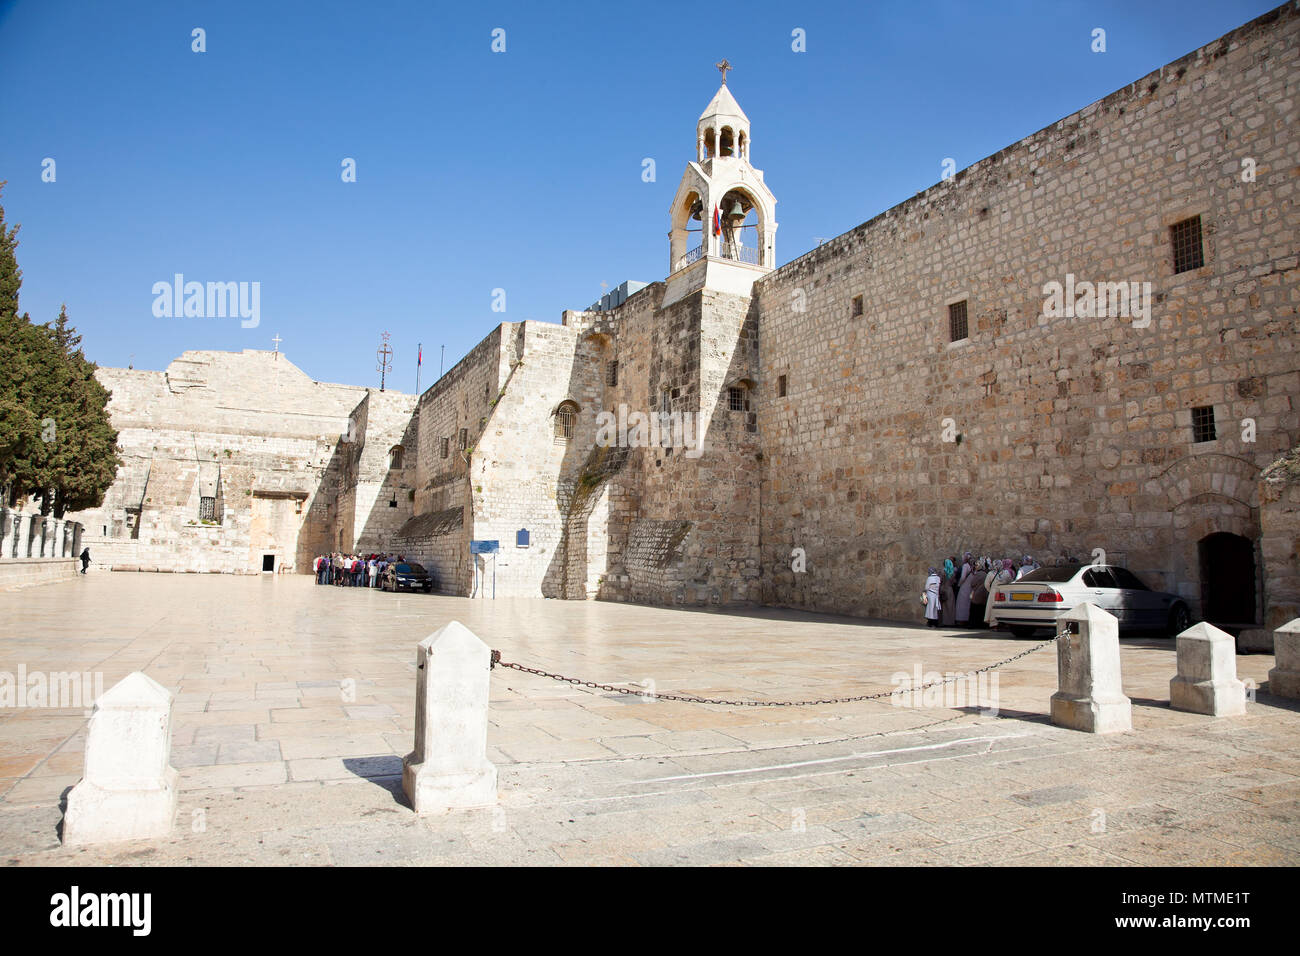 Geburtskirche, Bethlehem, West Bank, P alestine, Israel Stockfoto